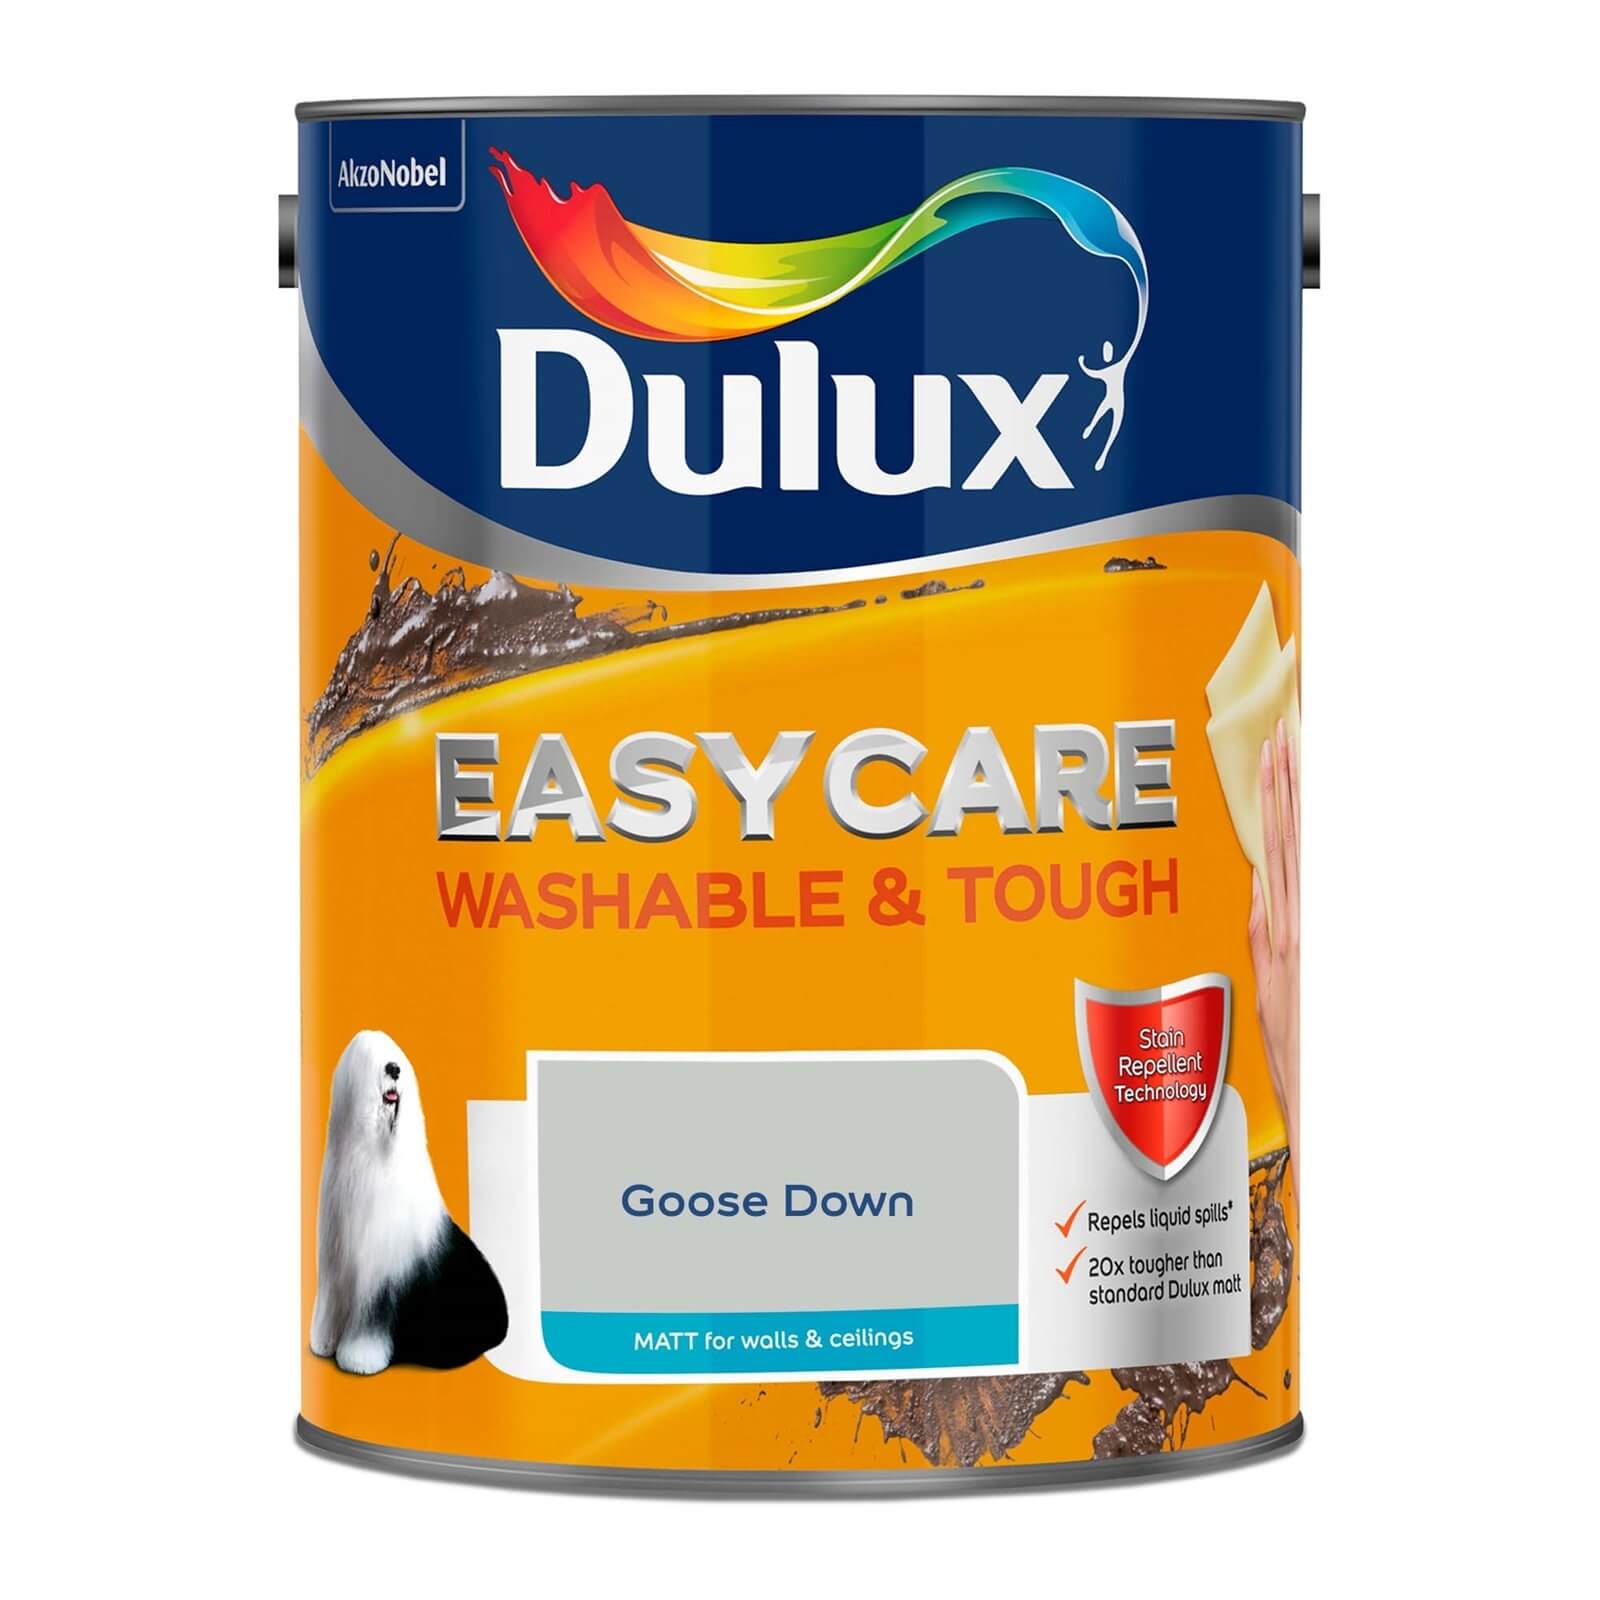 Dulux Easycare Washable & Tough Matt Goose Down - 5L